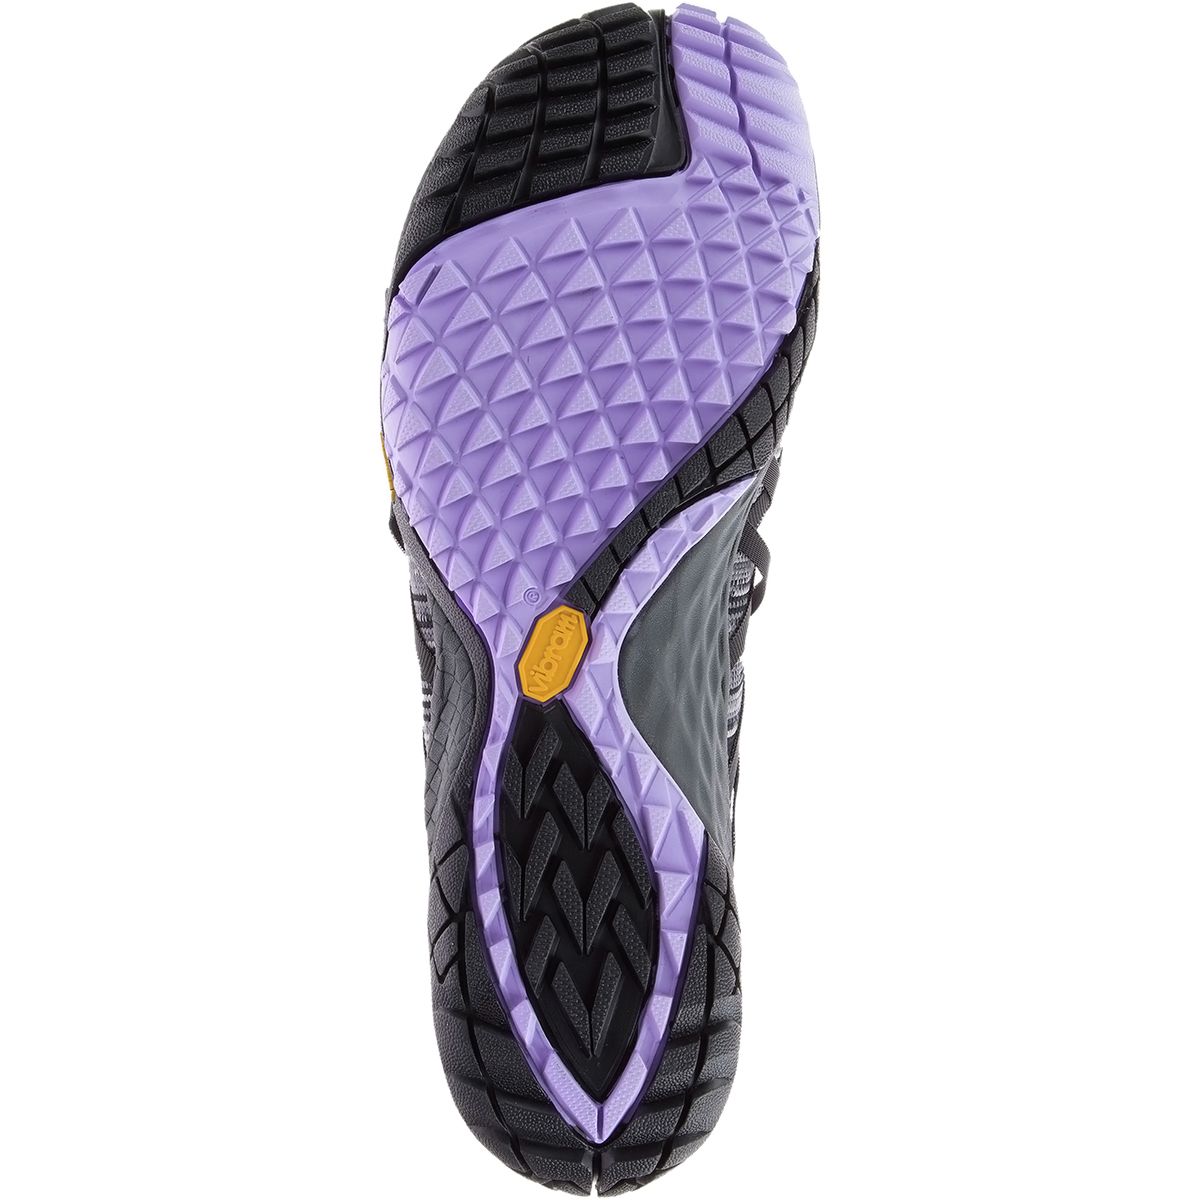 Merrell Trail Glove 4 Knit Shoe - Women's - Footwear